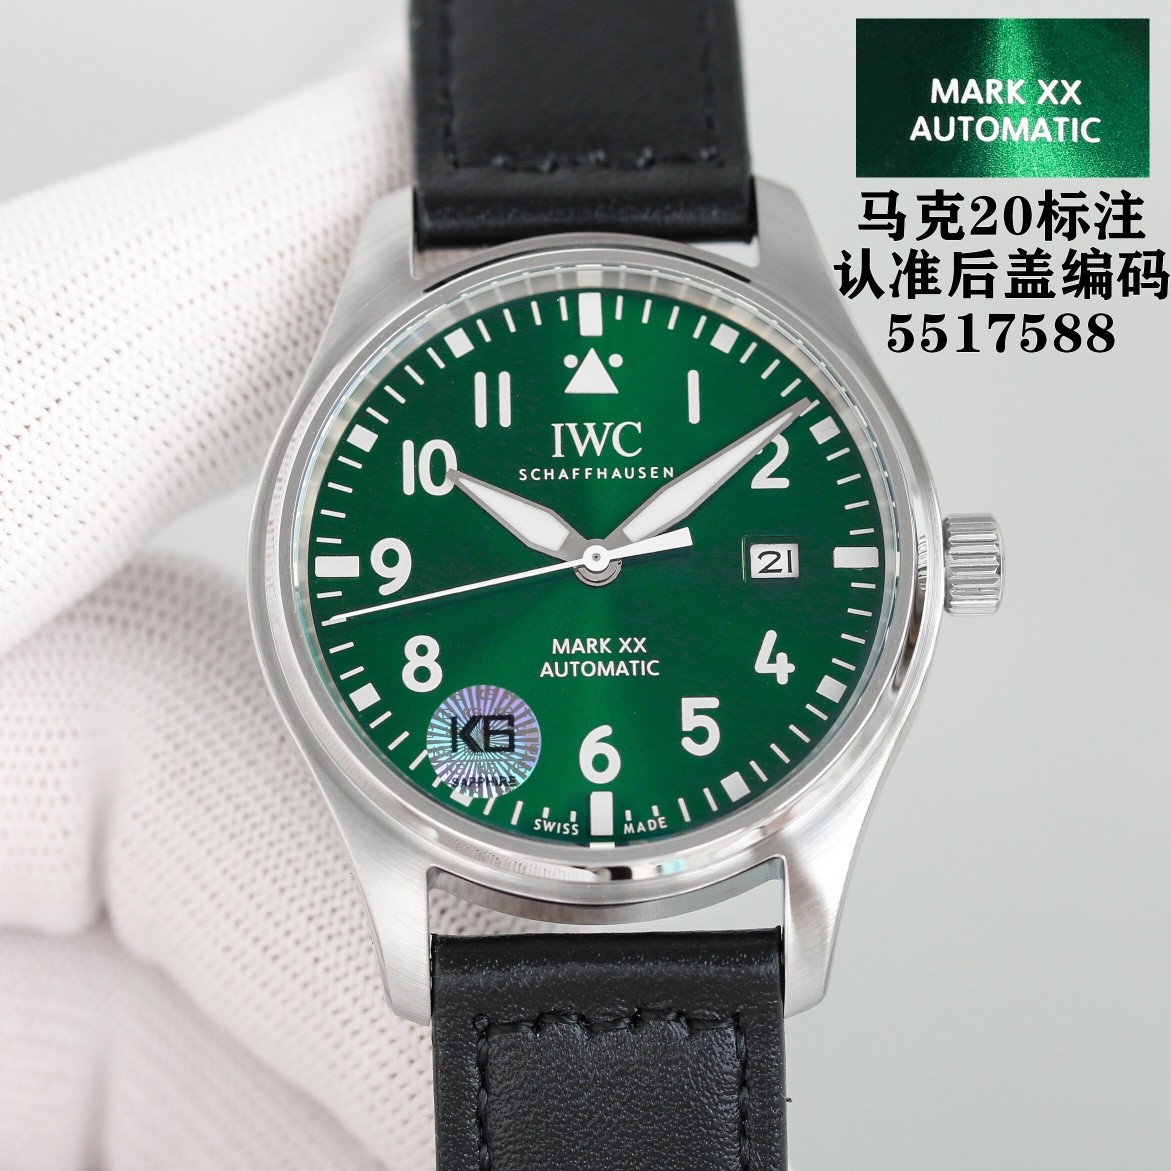 パイロット ウォッチ マーク XX ウォッチワインダー 時計 コピー 人気 エレガント 腕時計